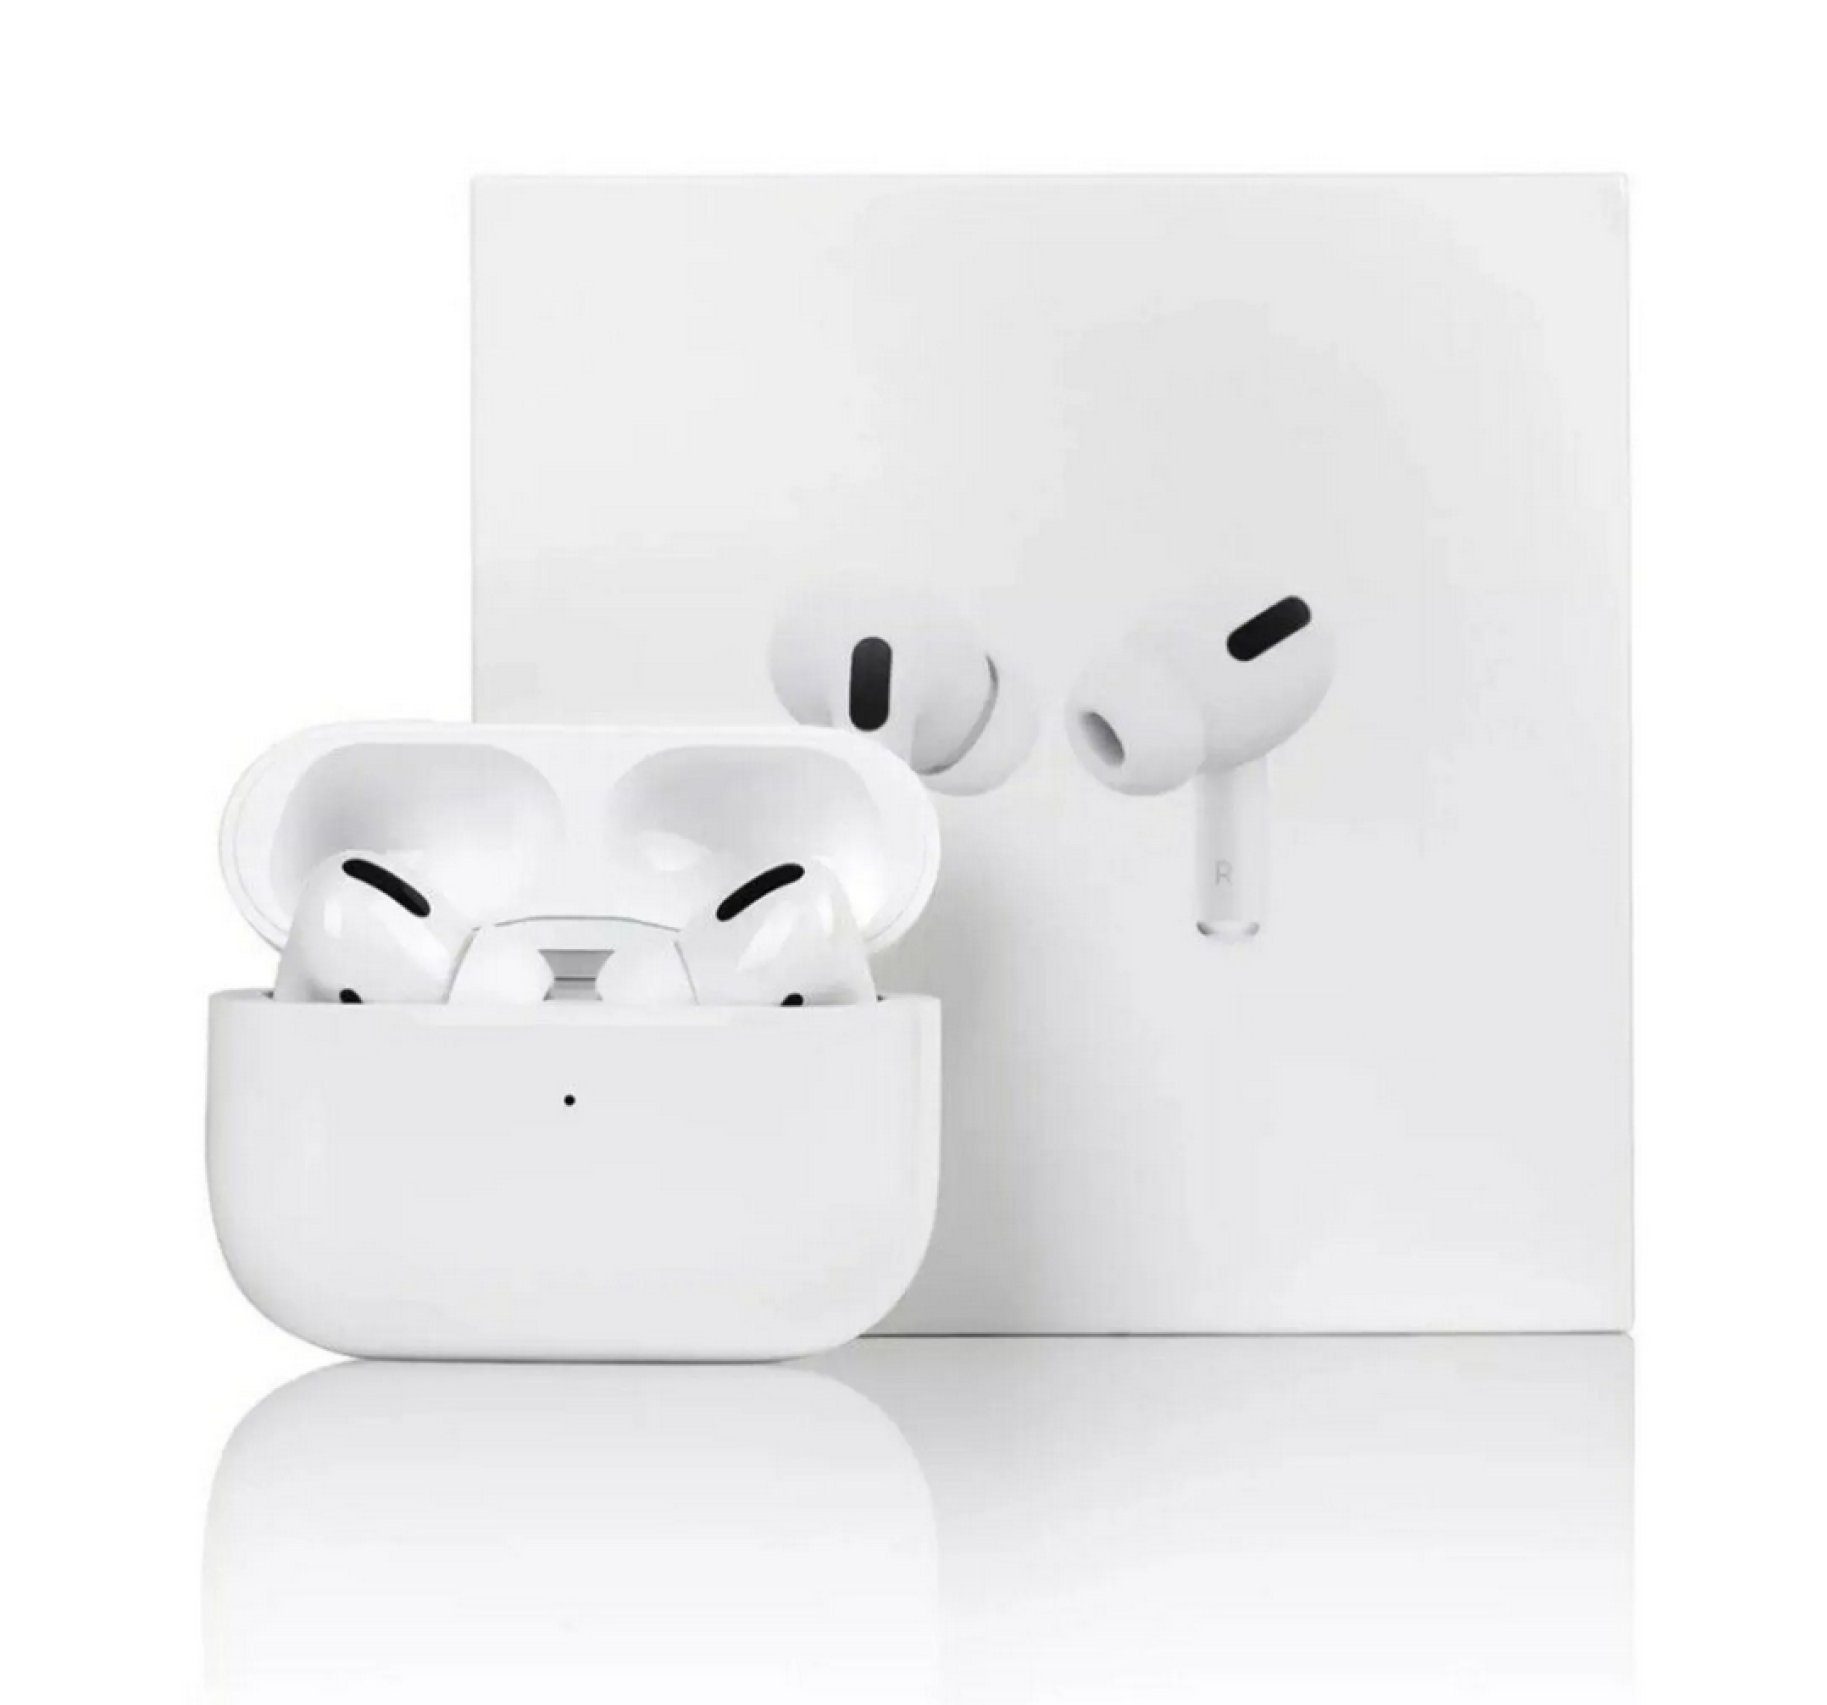 OIITH Bluetooth Kopfhörer für Apple iPhone & Android Air pods Kabellose  Kopf wireless In-Ear-Kopfhörer